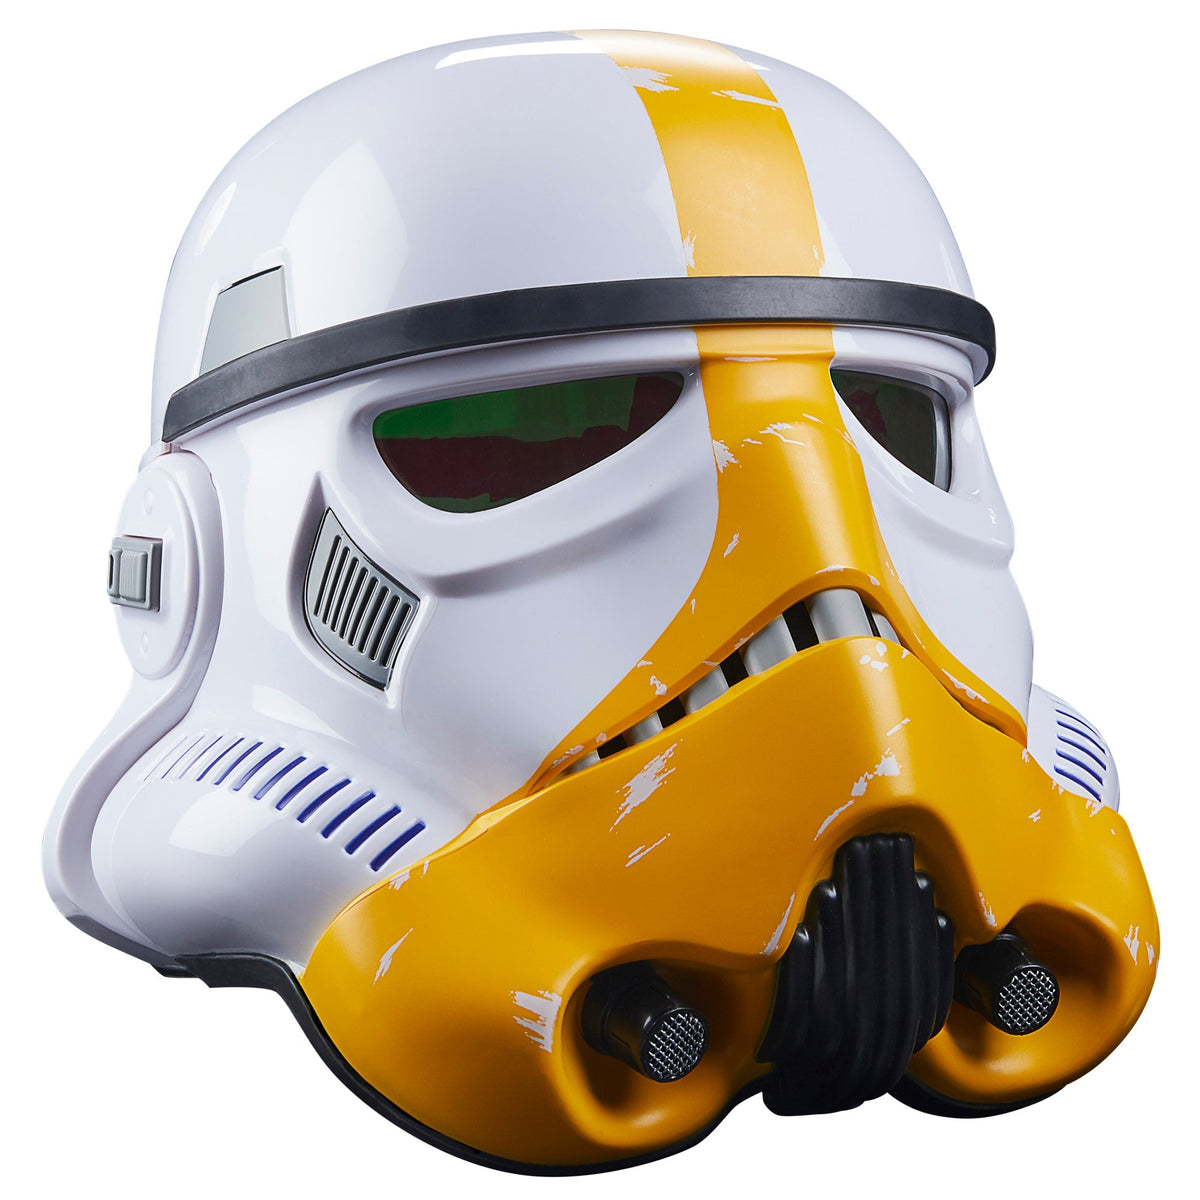 Star Wars Casque Stormtrooper authentique  Star wars helmet, Stormtrooper  helmet, Stormtrooper